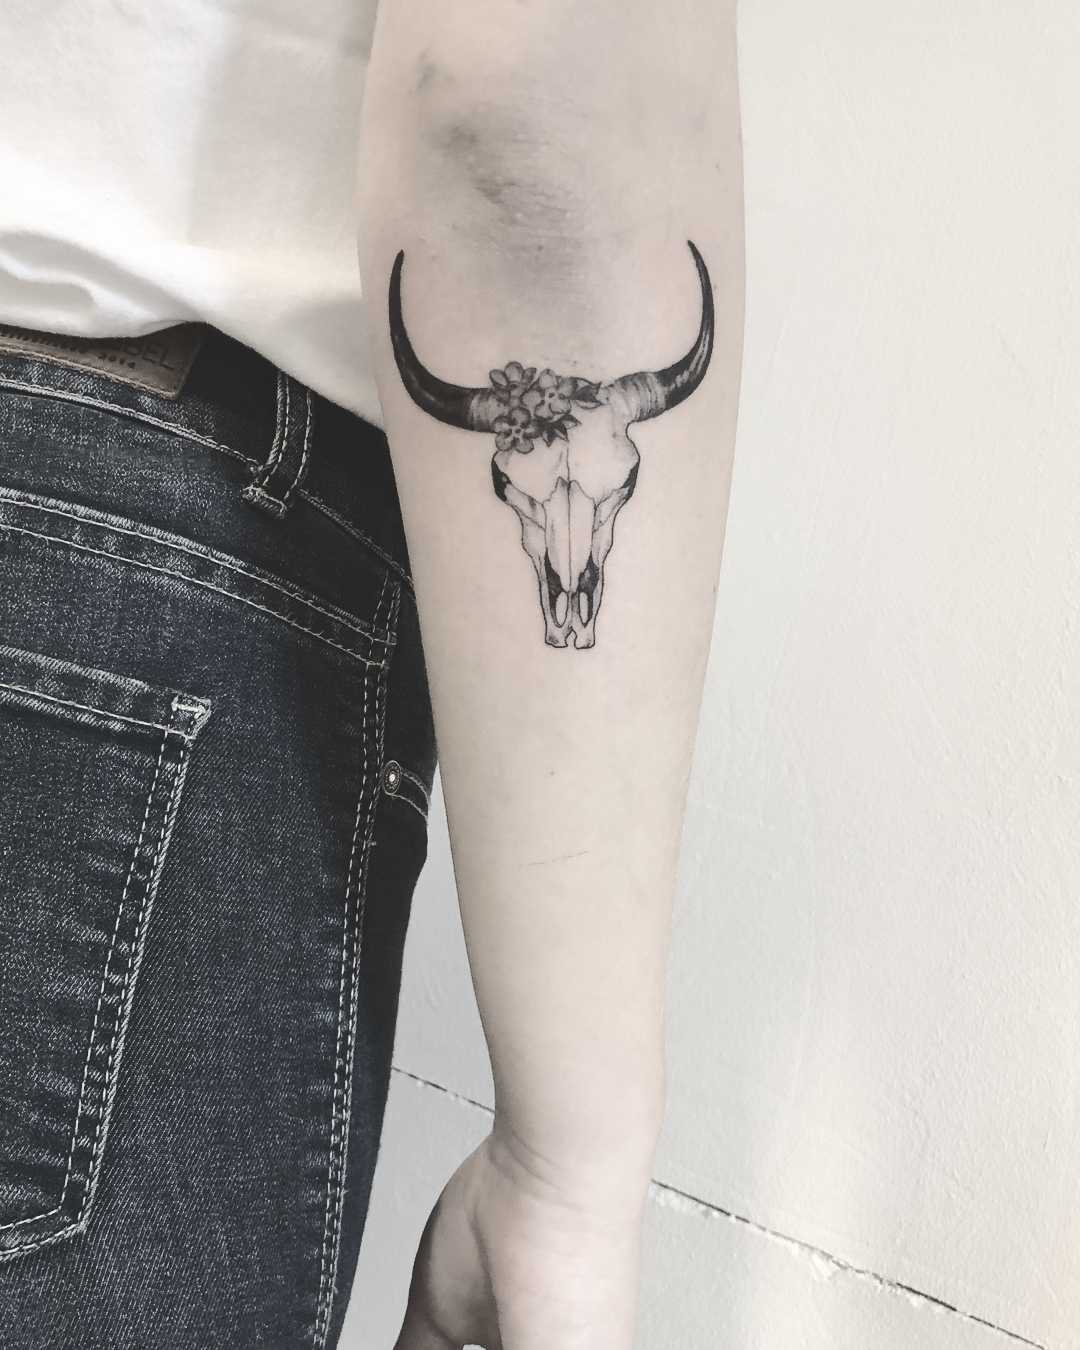 Bullskull tattoo by Annelie Fransson